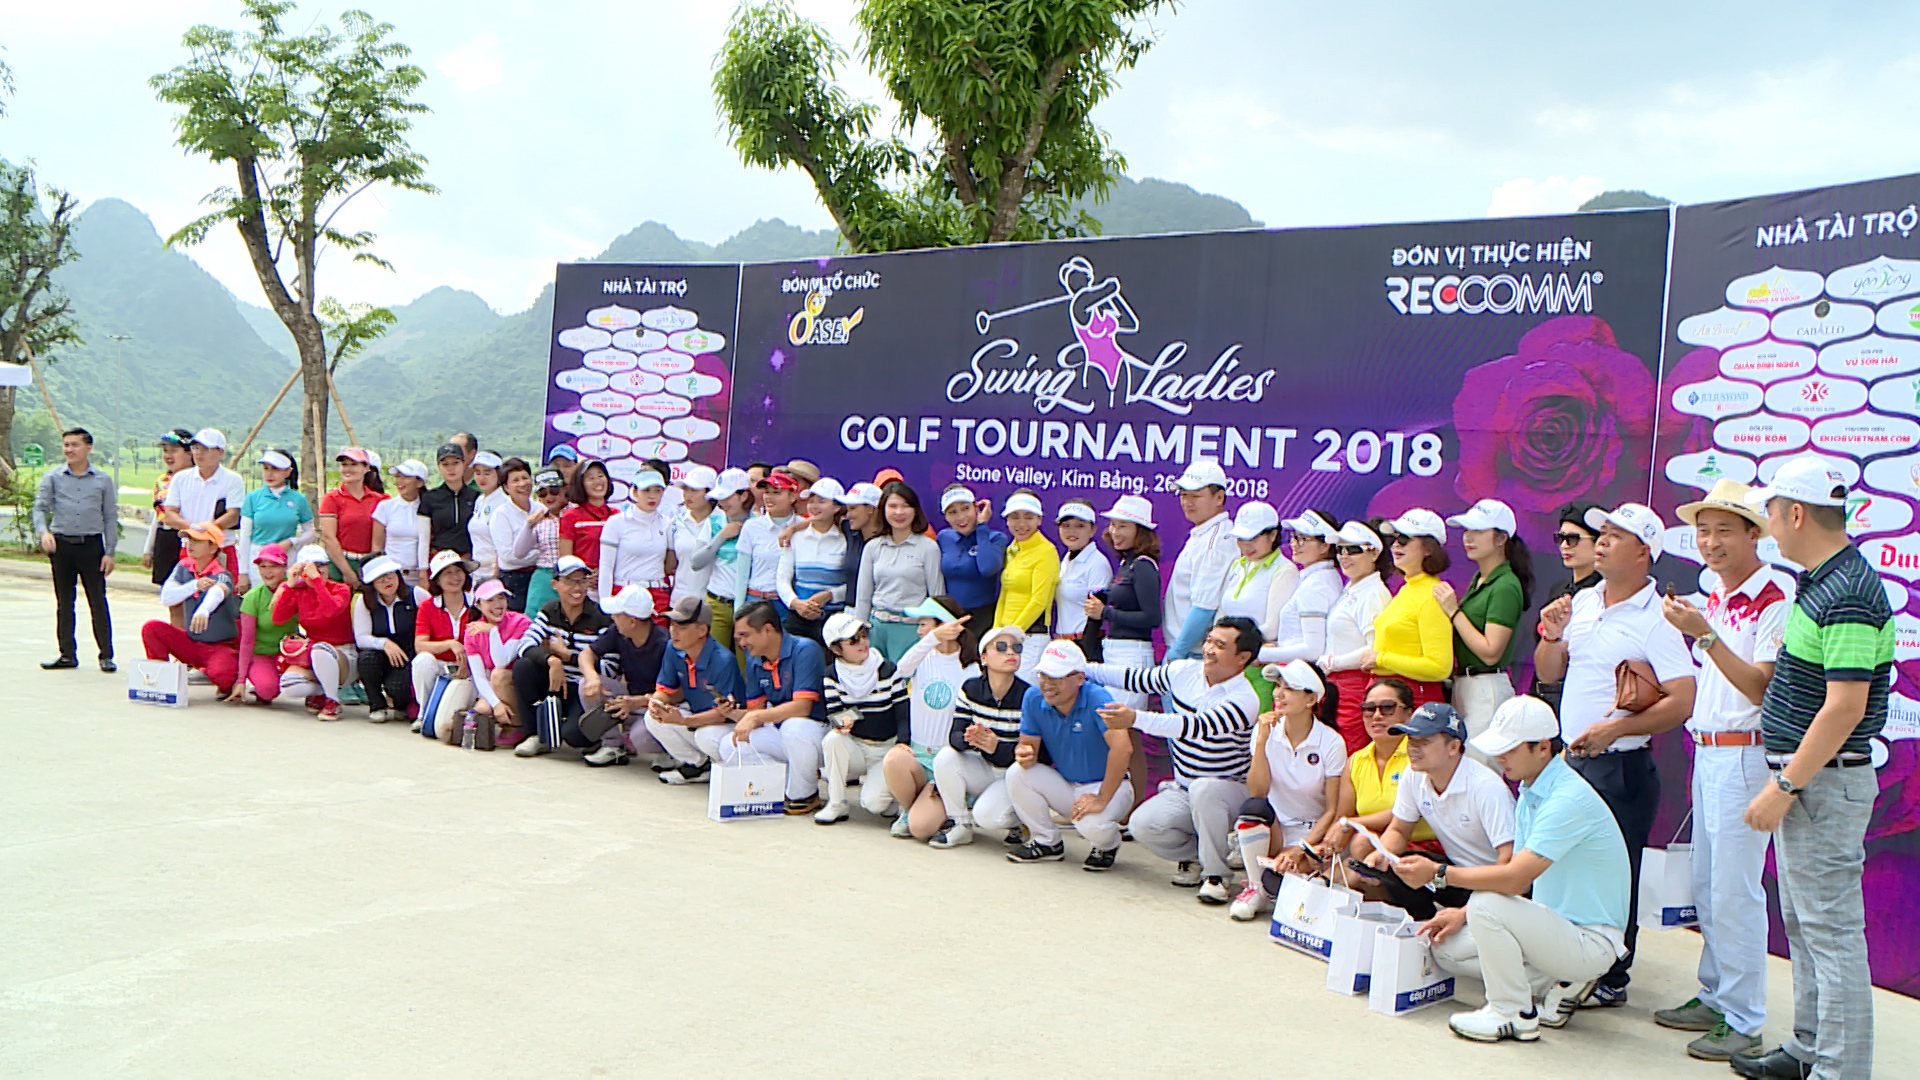 Swing ladies golf tournament 2018: Giải đấu của các cặp đôi